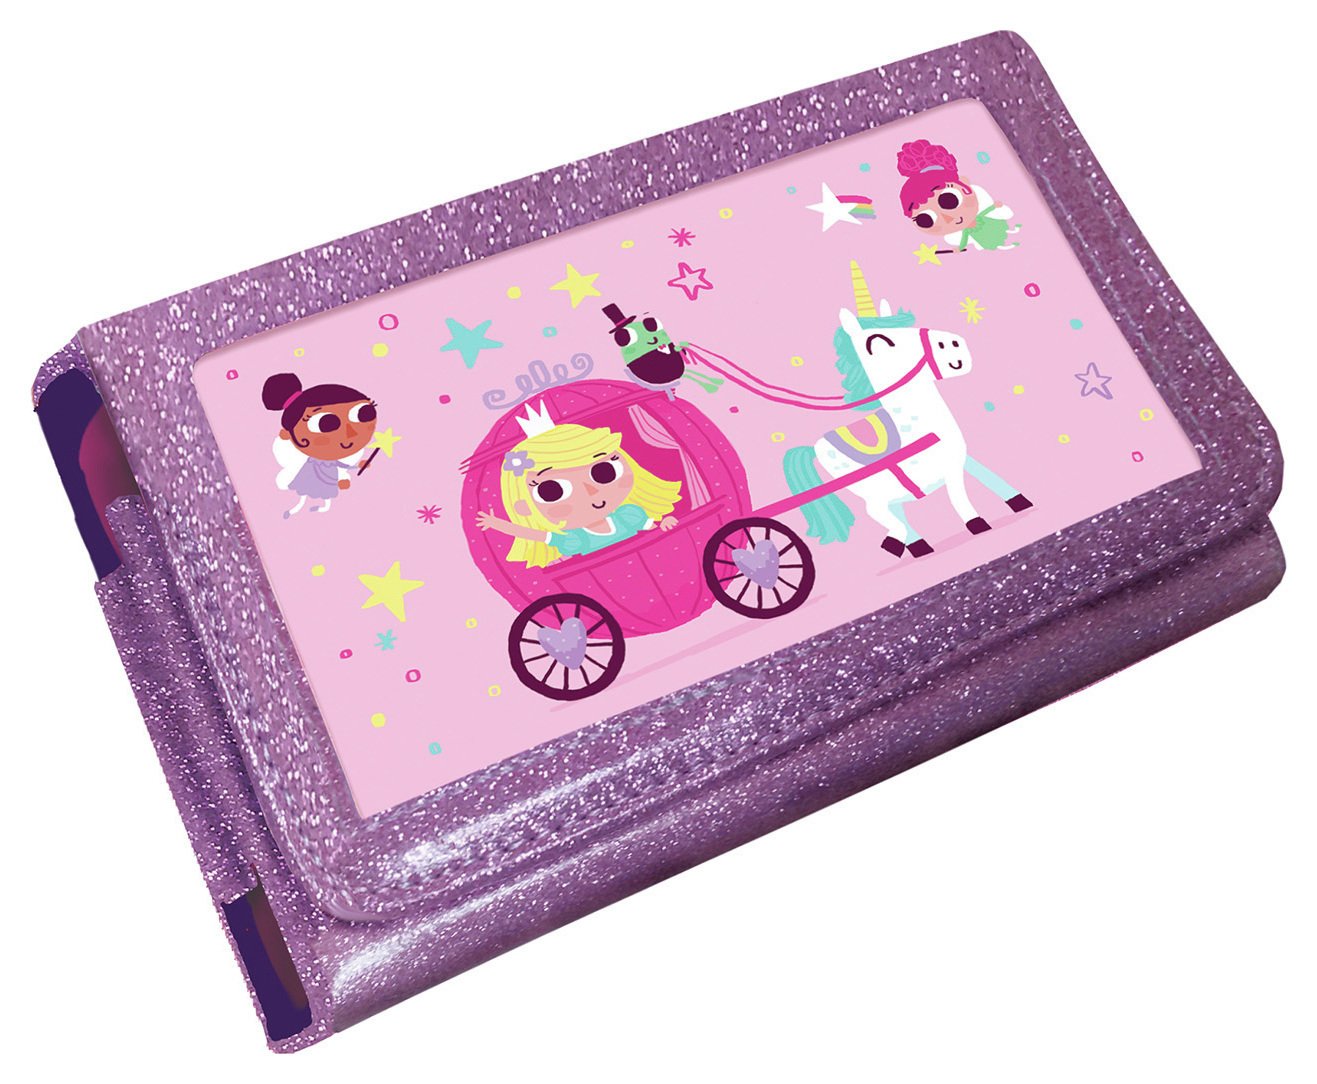 Fairy Unicorn Princess Nintendo 3DS XL, 2DS XL Case Review